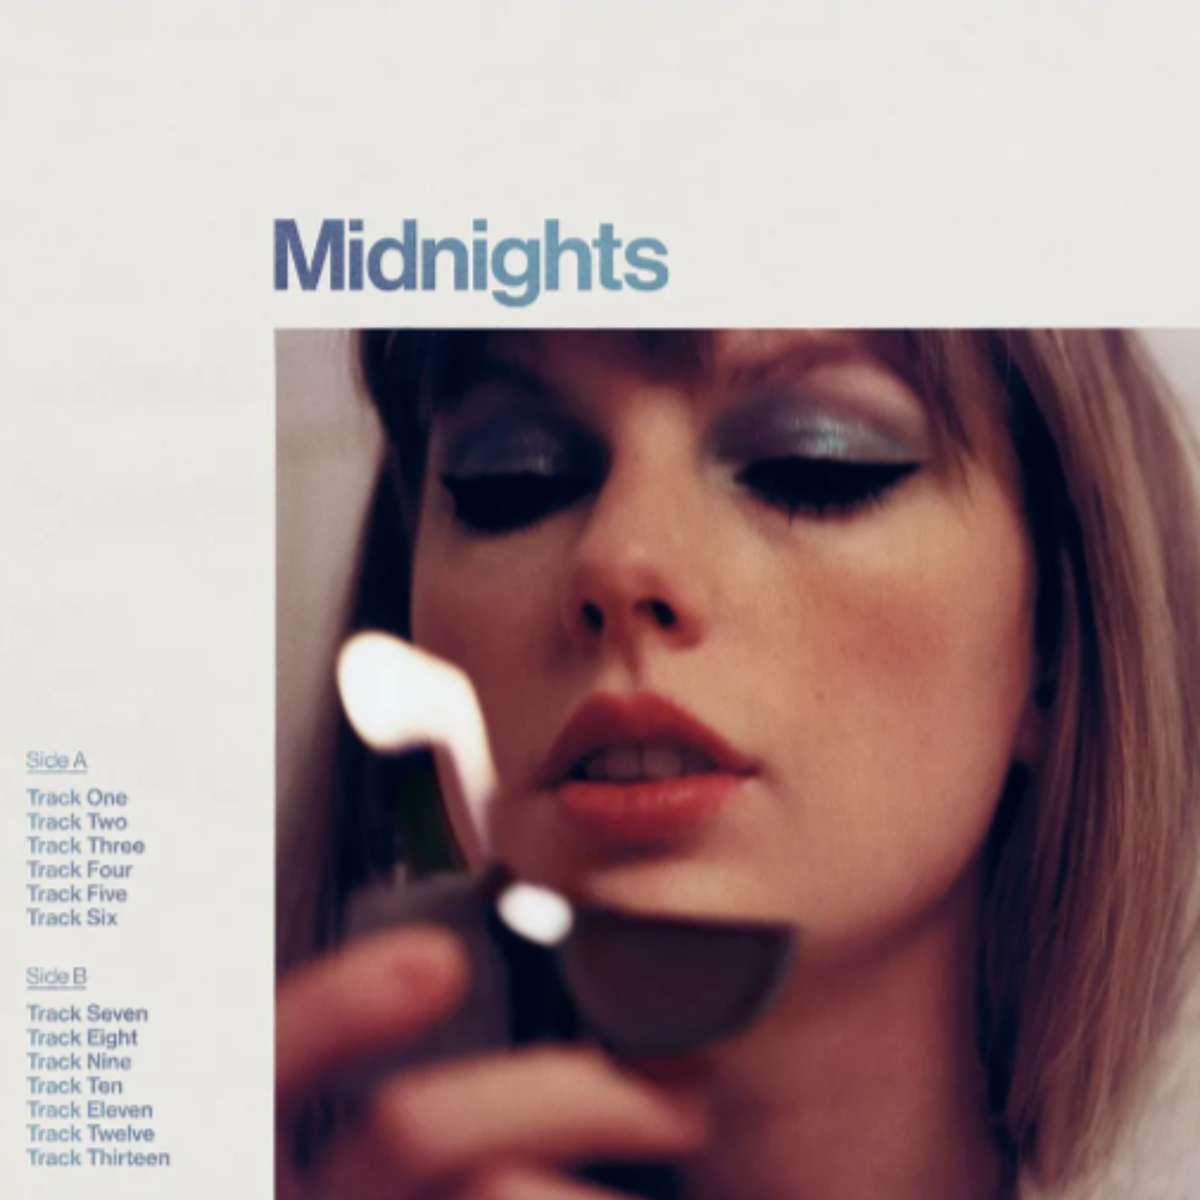 Midnights - обложка на албума на Тейлър Суифт онлайн пъзел от снимка